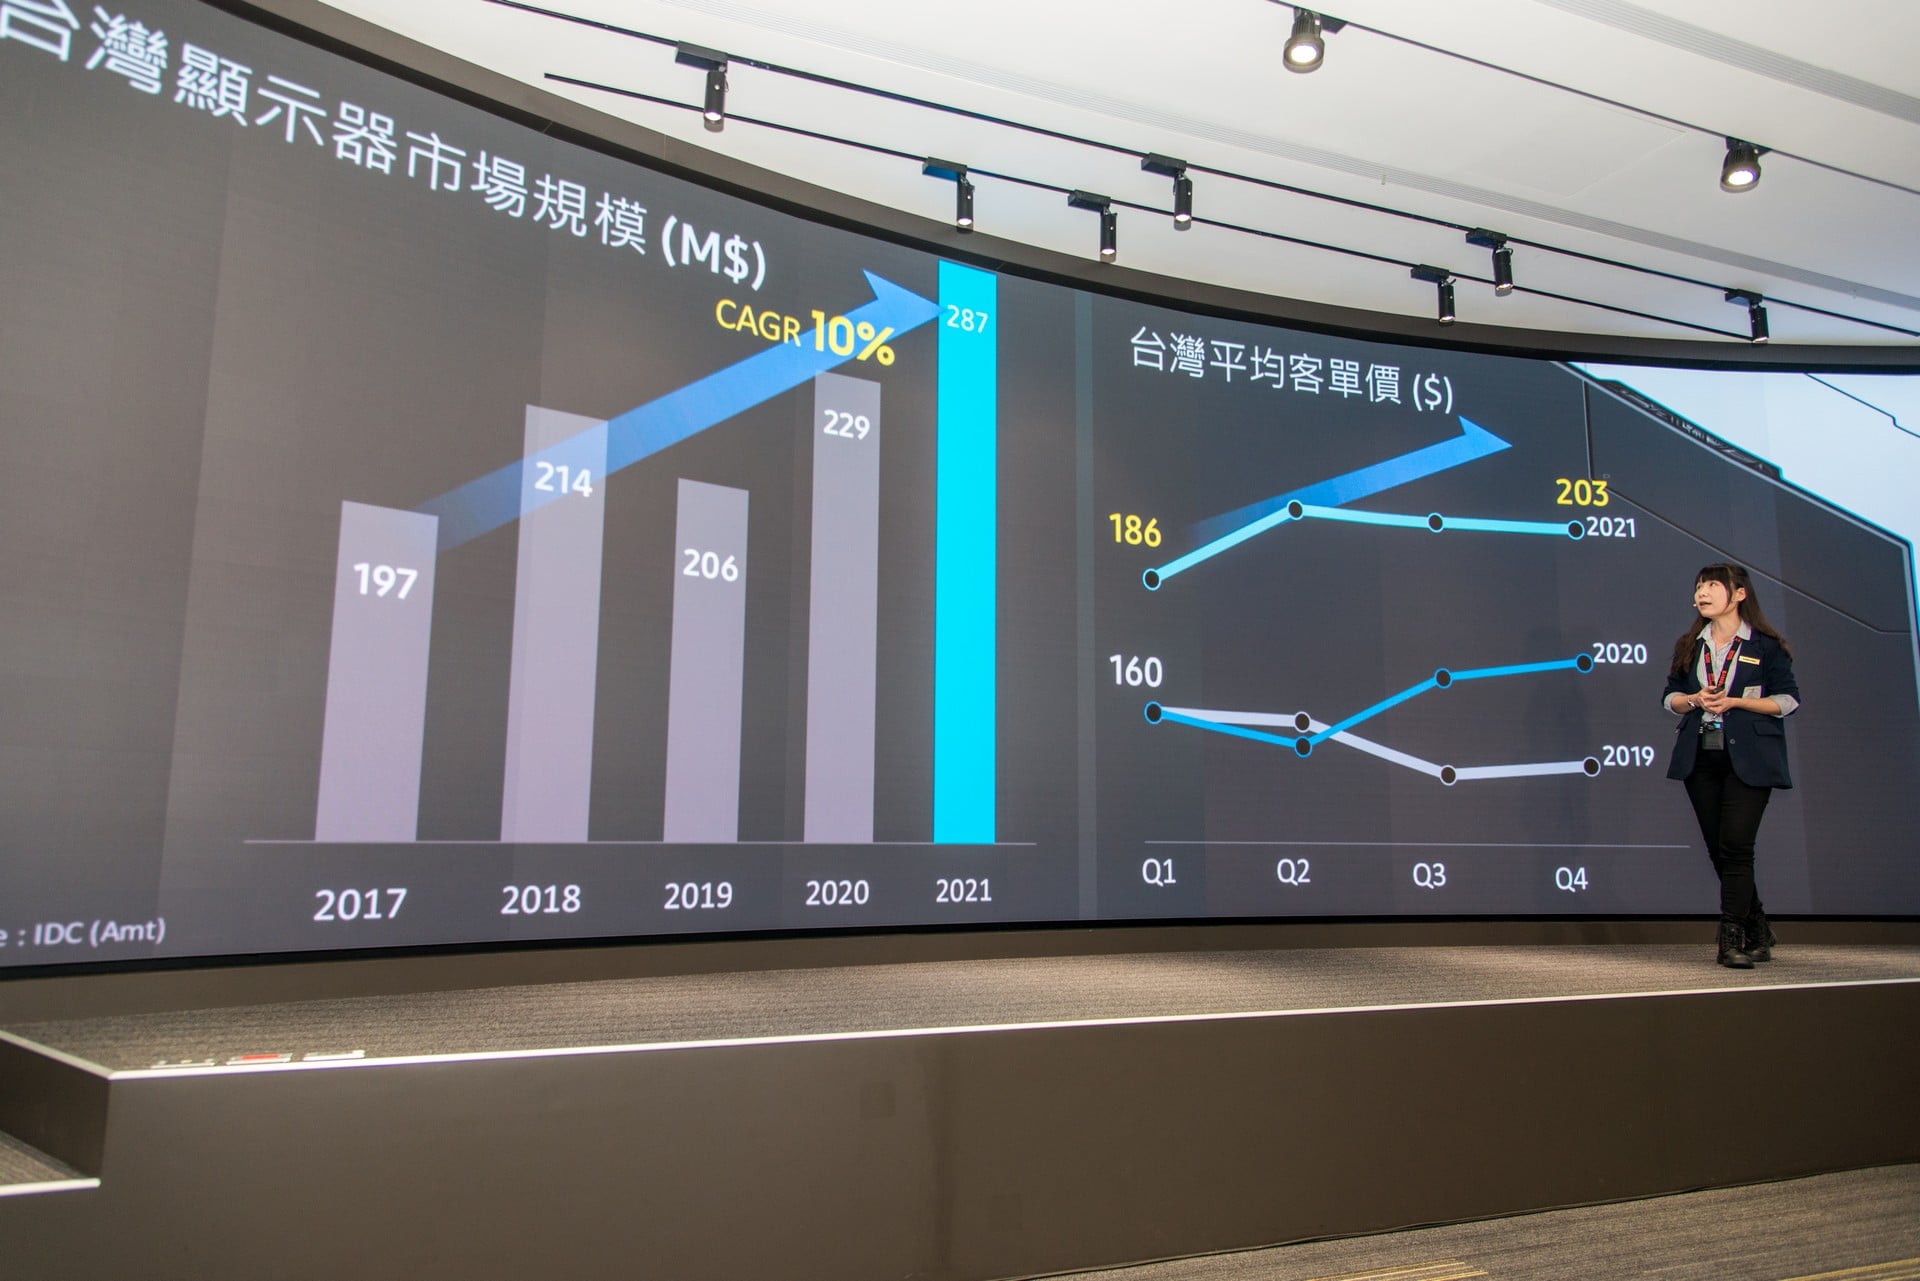 顯示器的市場規模在近兩年以 10% 的成長率大幅增長